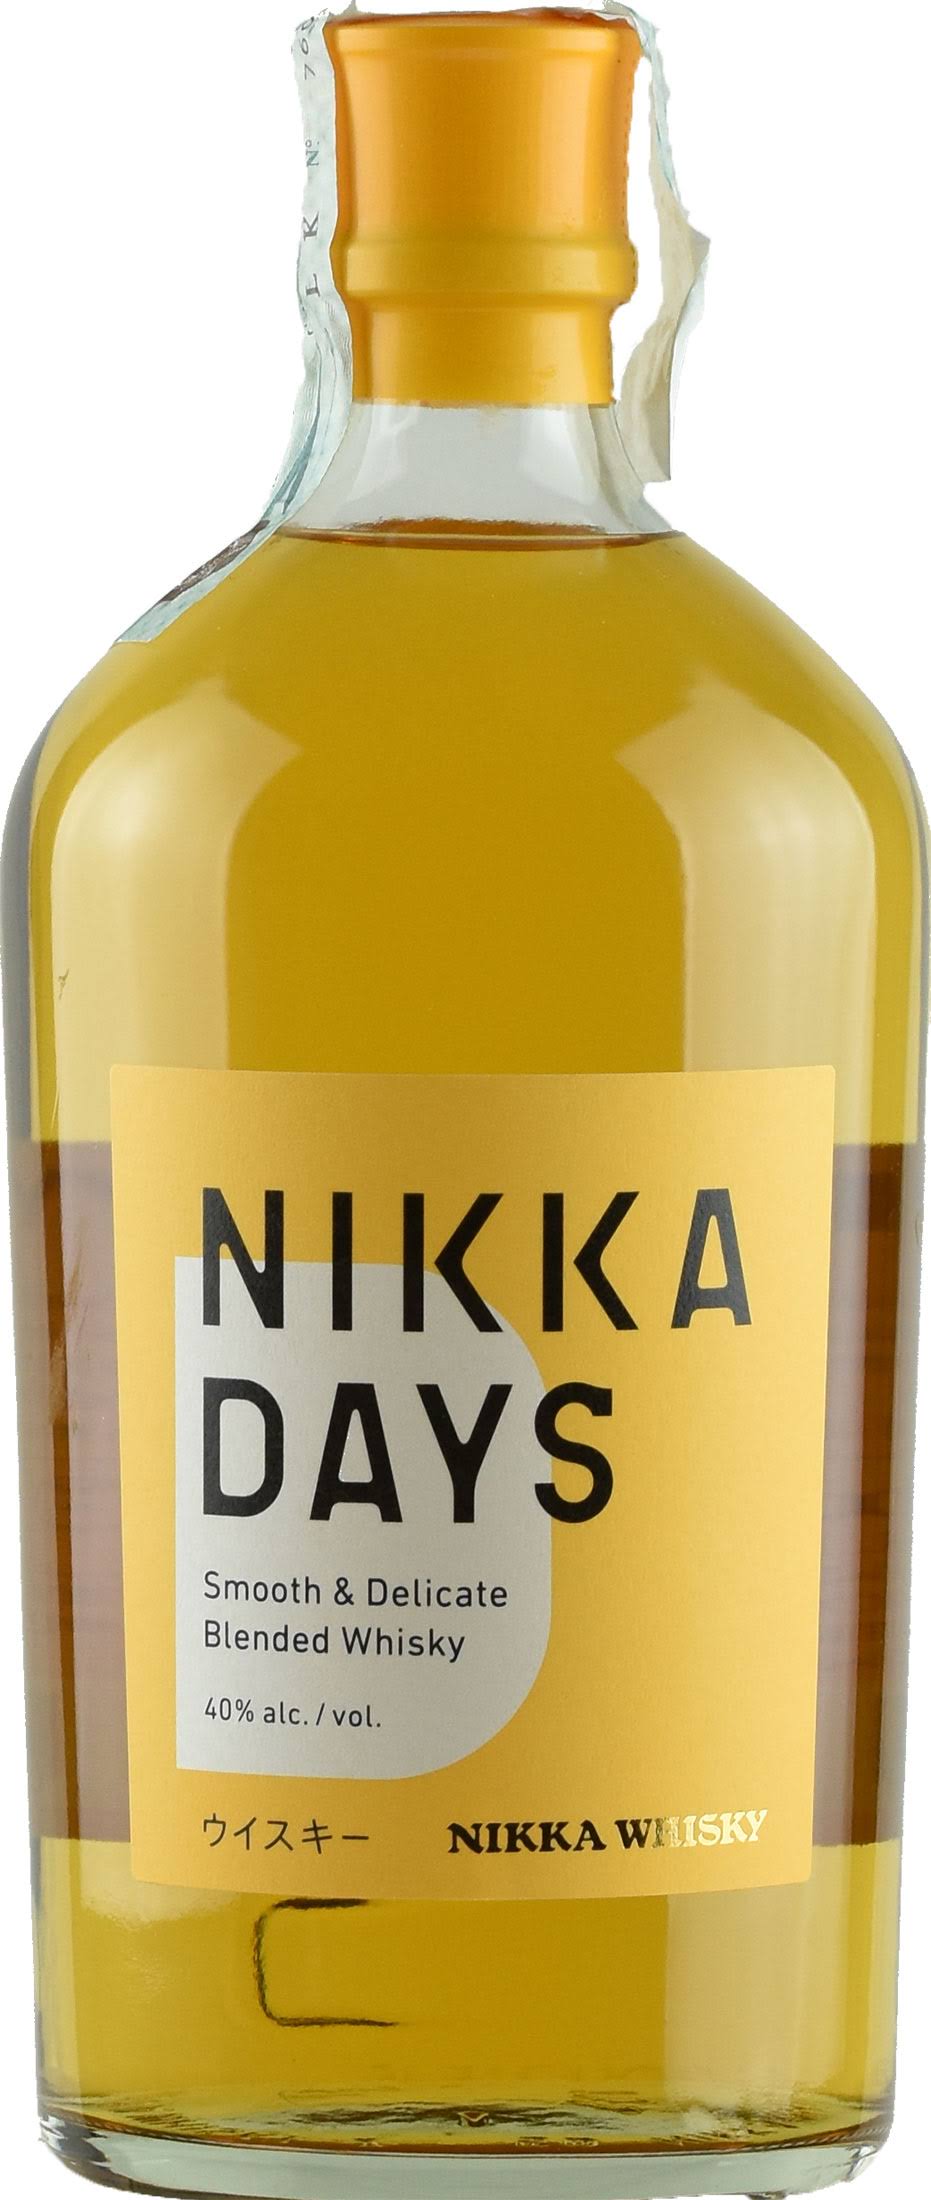 Nikka Days Blended Whisky - 0.7L